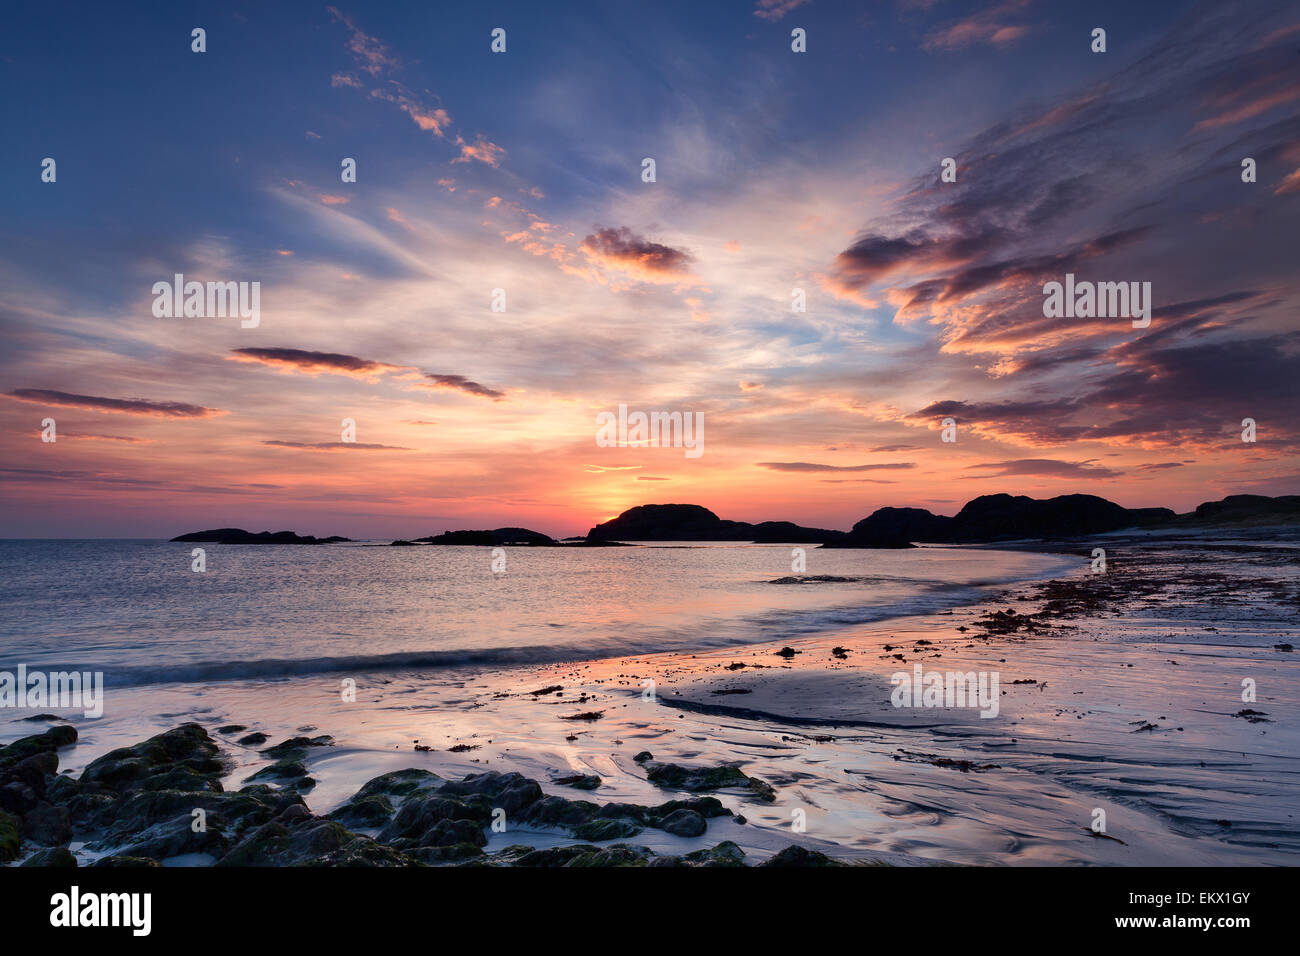 Stunning sunset on a beach of Iona, Scotland Stock Photo